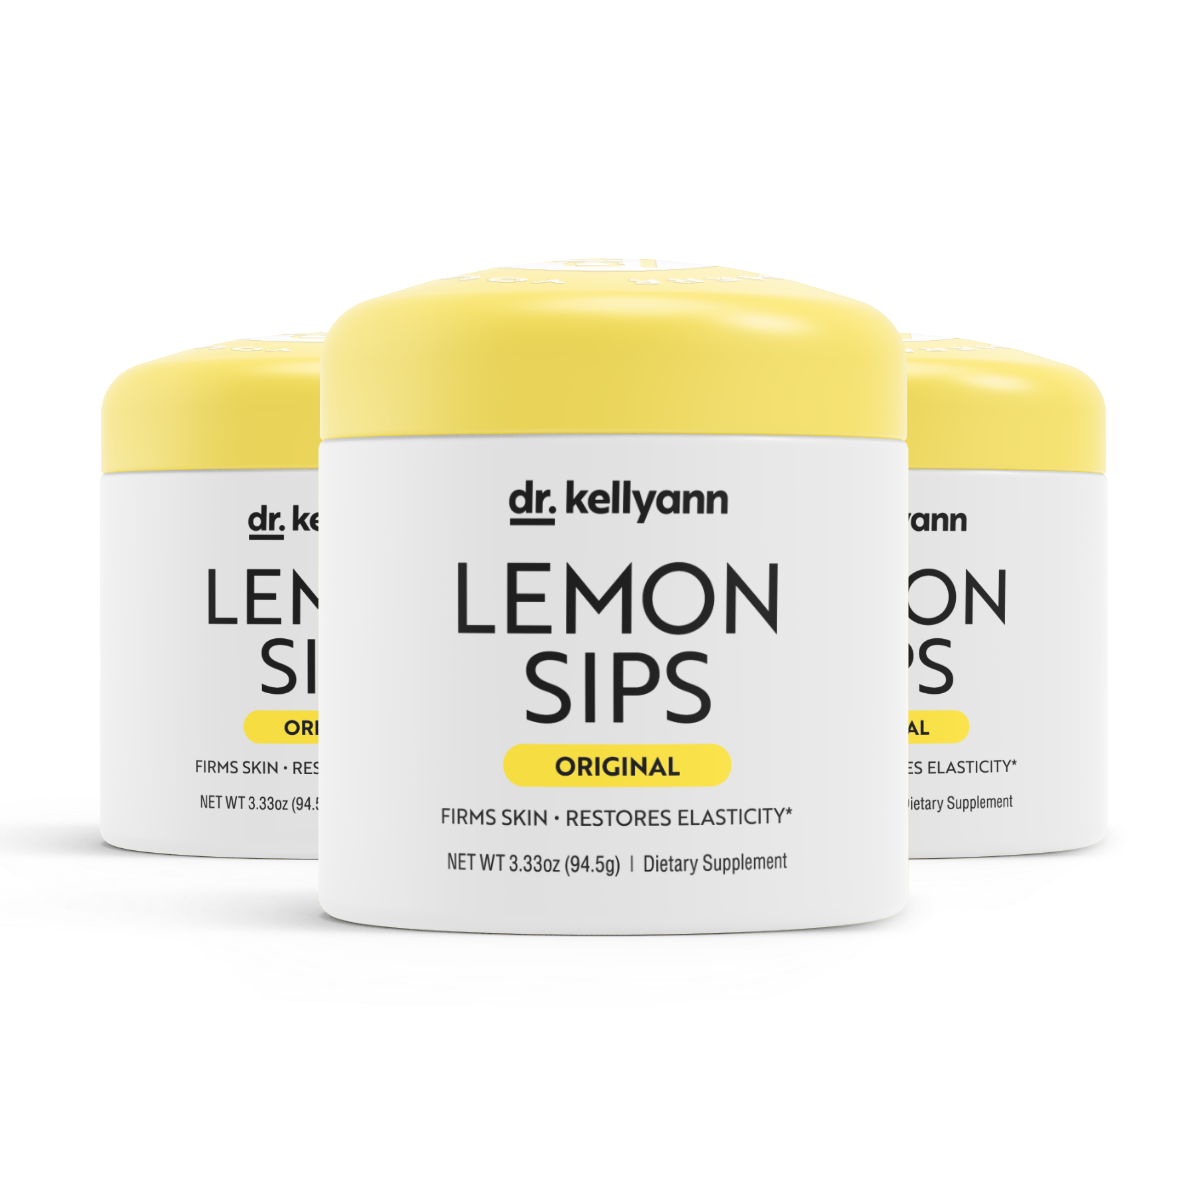 Lemon Sips